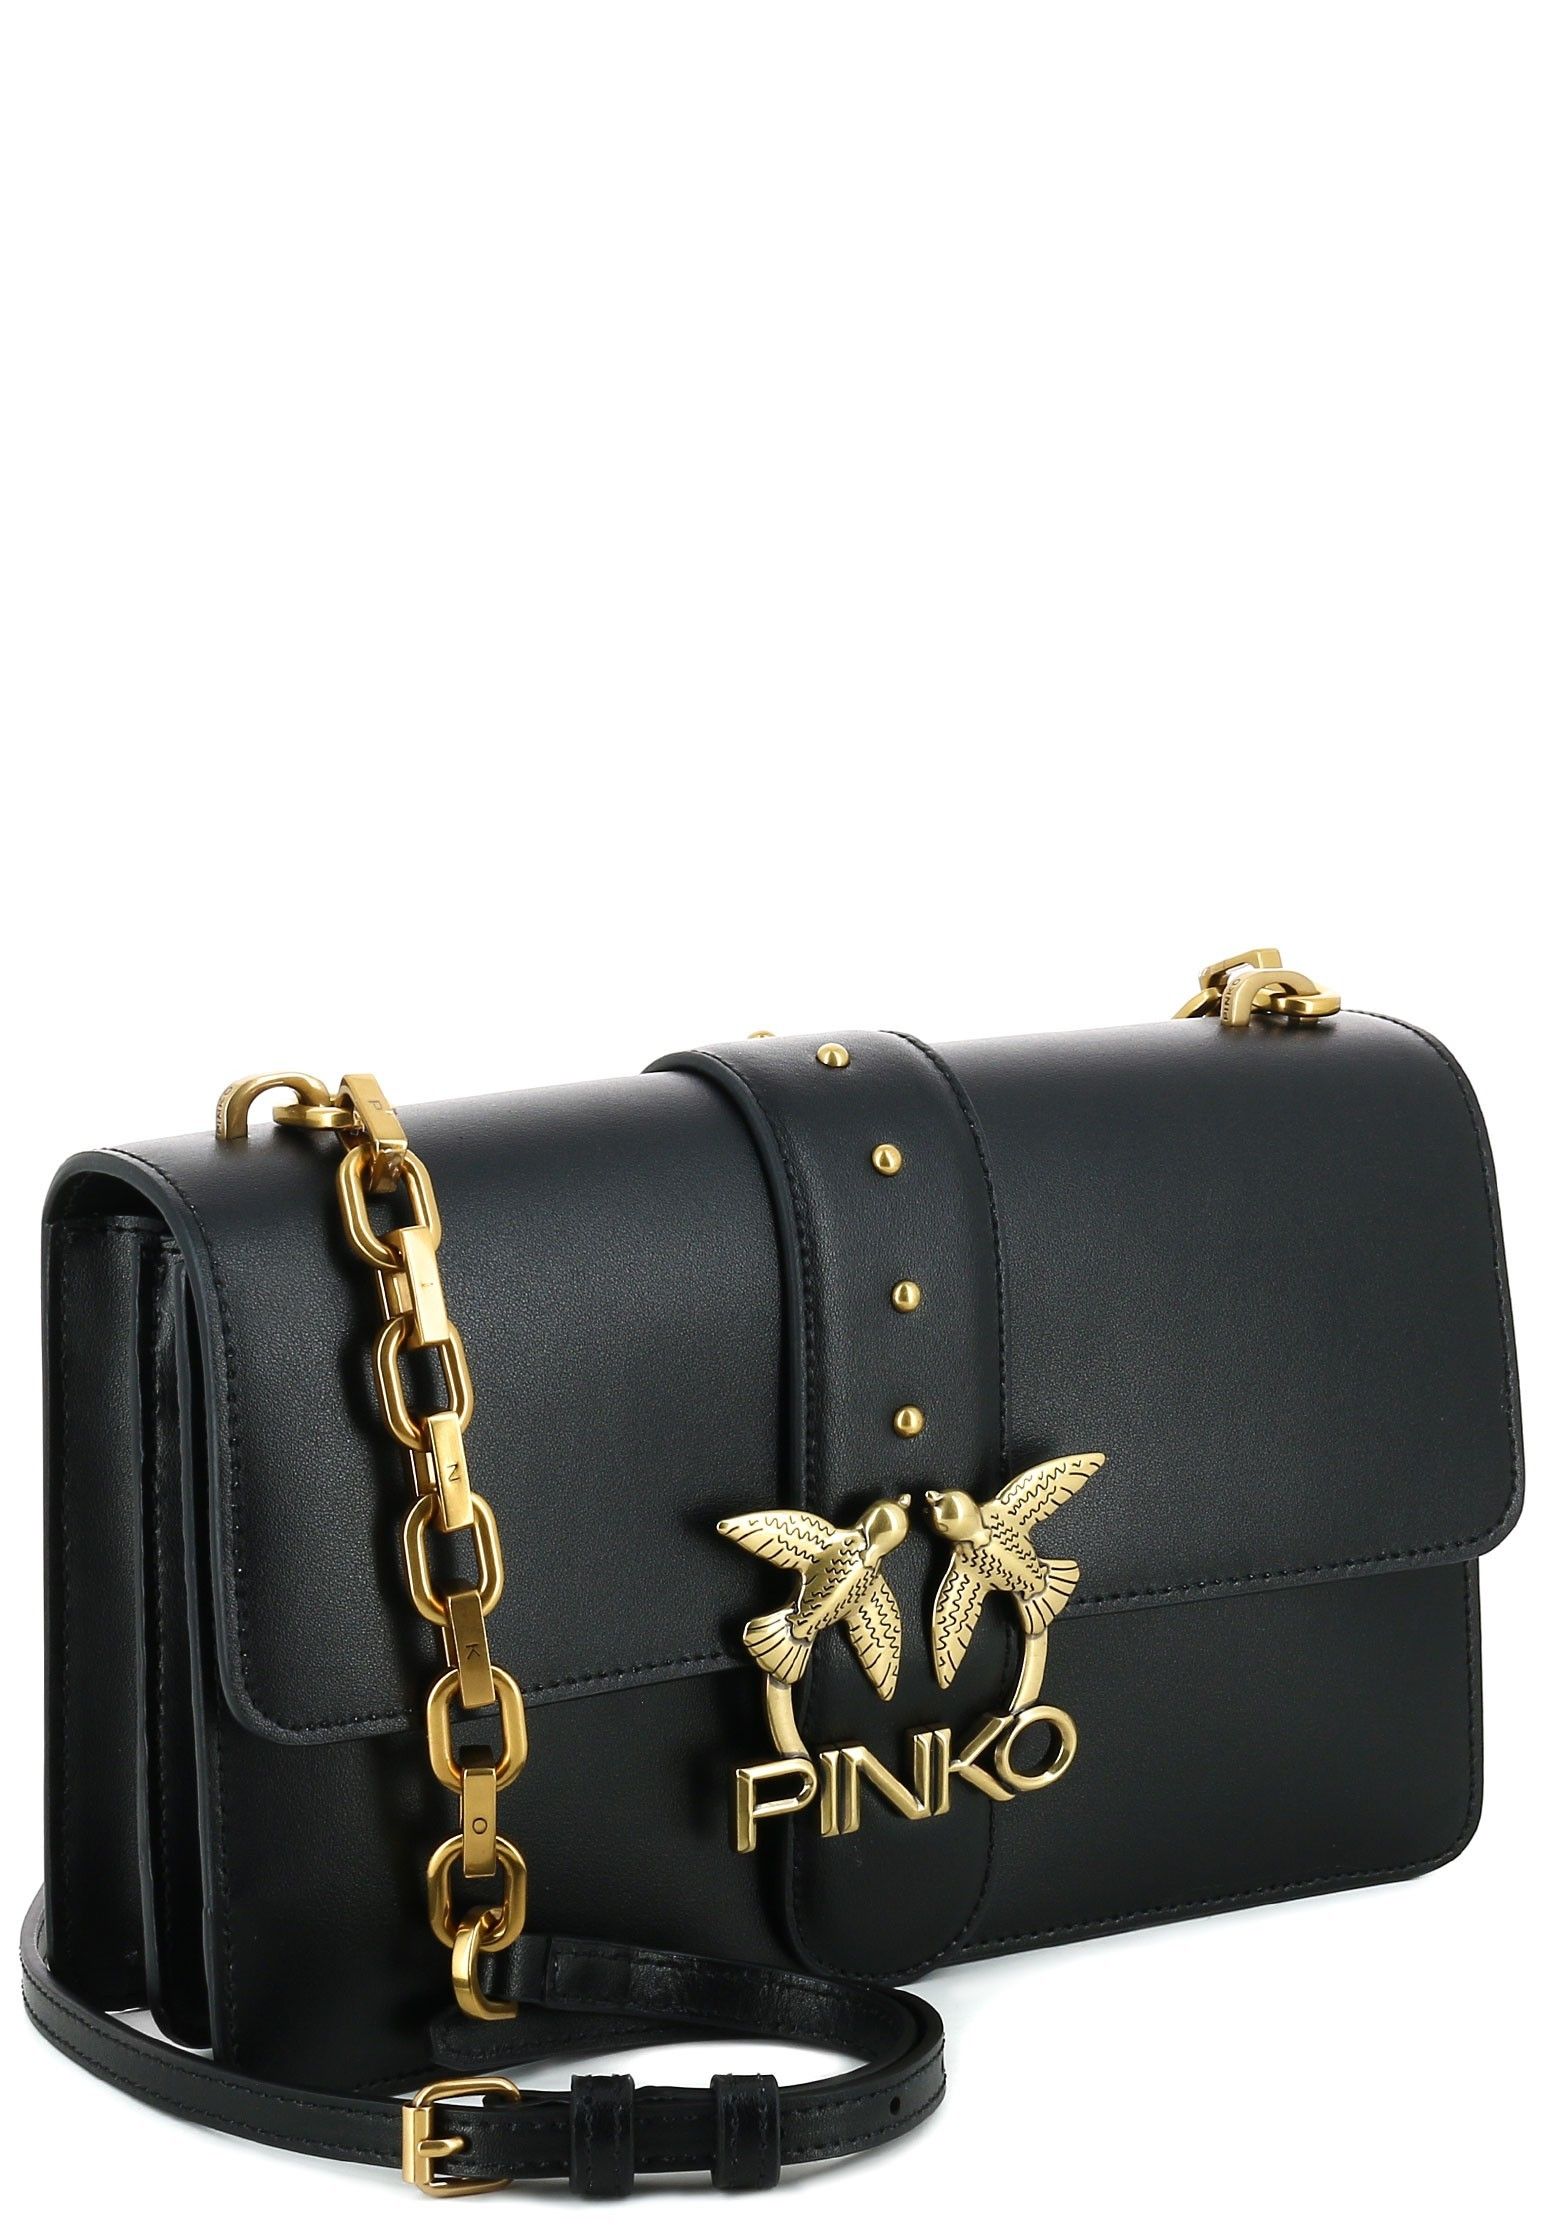 Сумка Pinko Mini Double p Bag icon classique